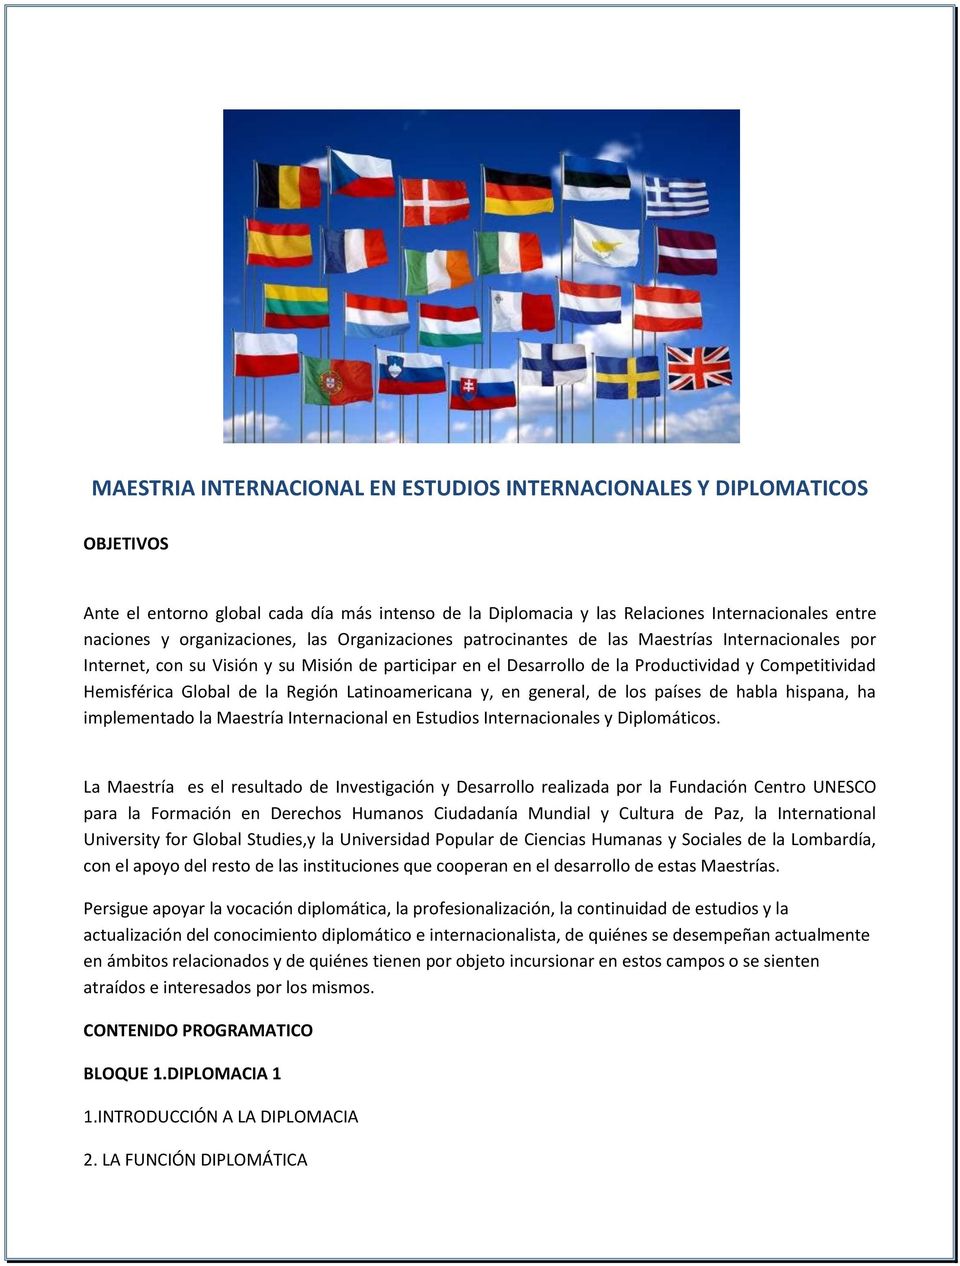 Hemisférica Global de la Región Latinoamericana y, en general, de los países de habla hispana, ha implementado la Maestría Internacional en Estudios Internacionales y Diplomáticos.